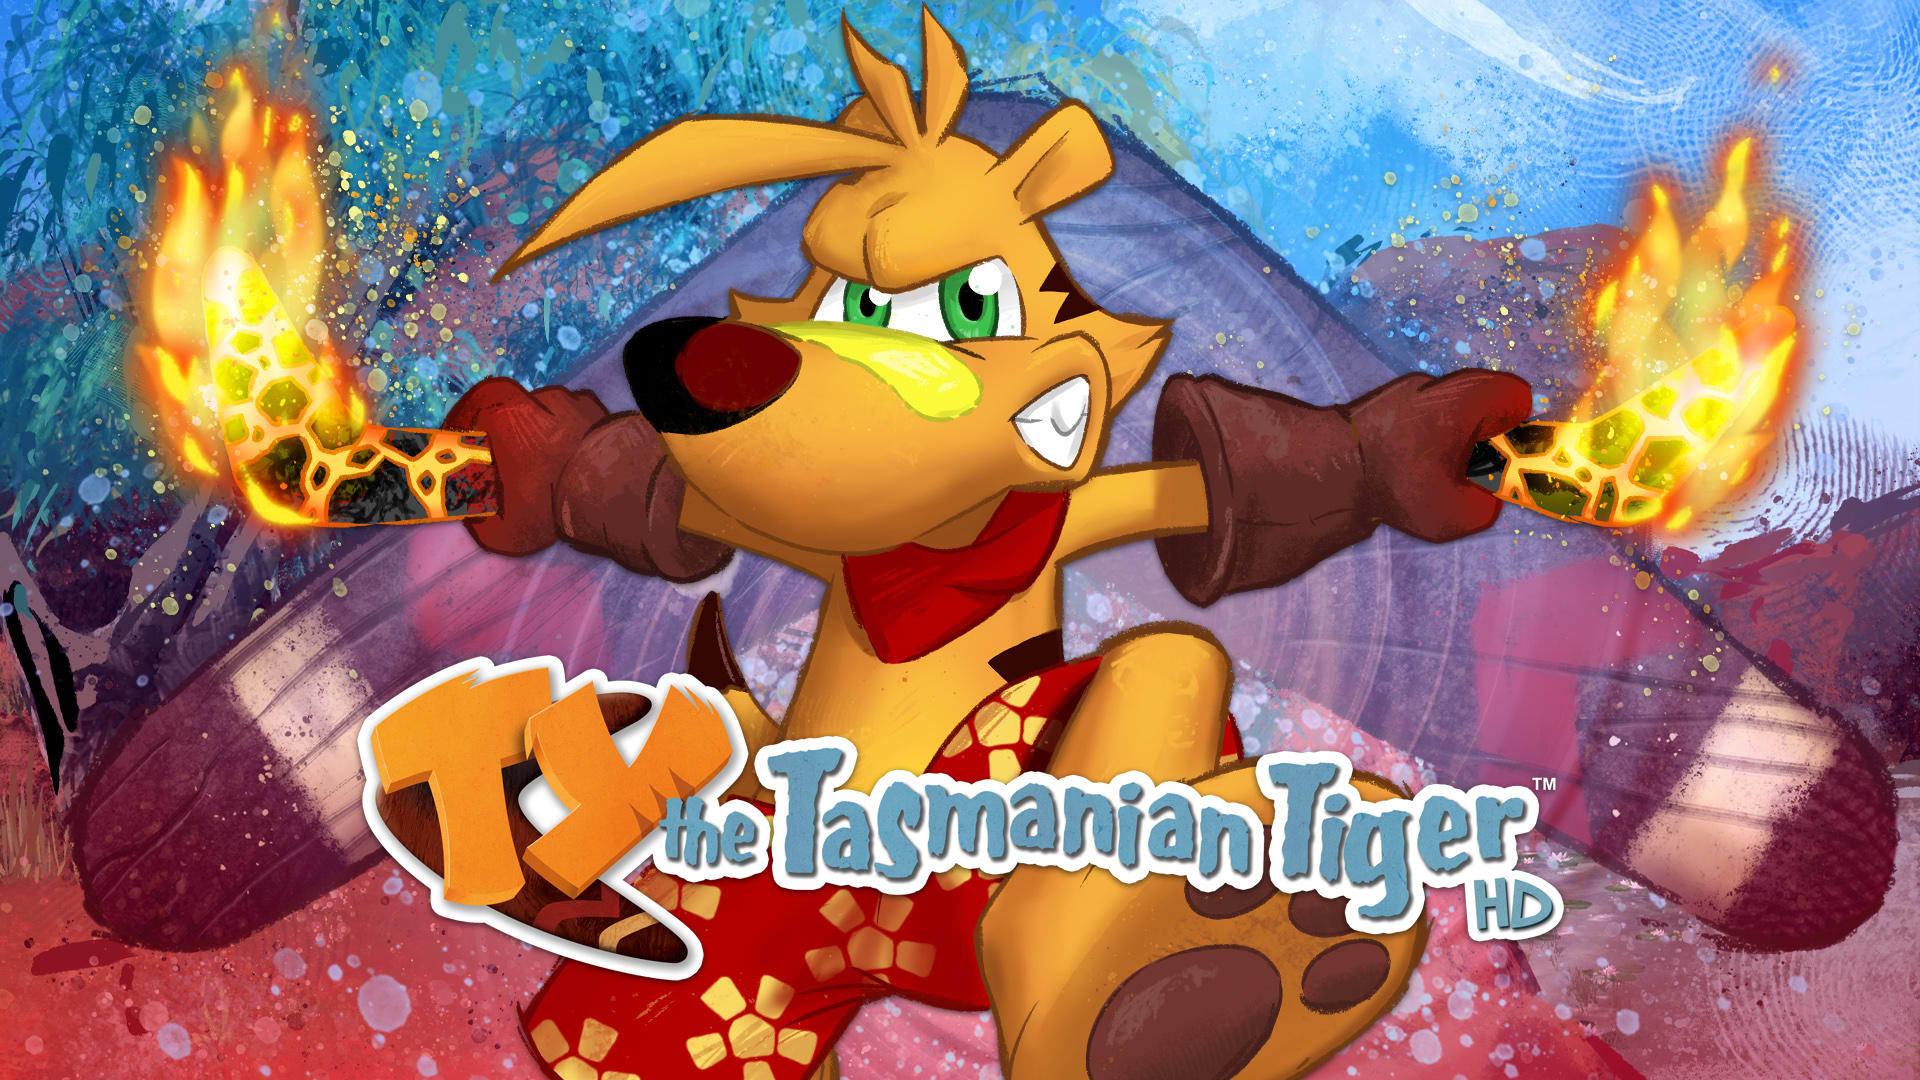 TY the Tasmanian Tiger™ HD